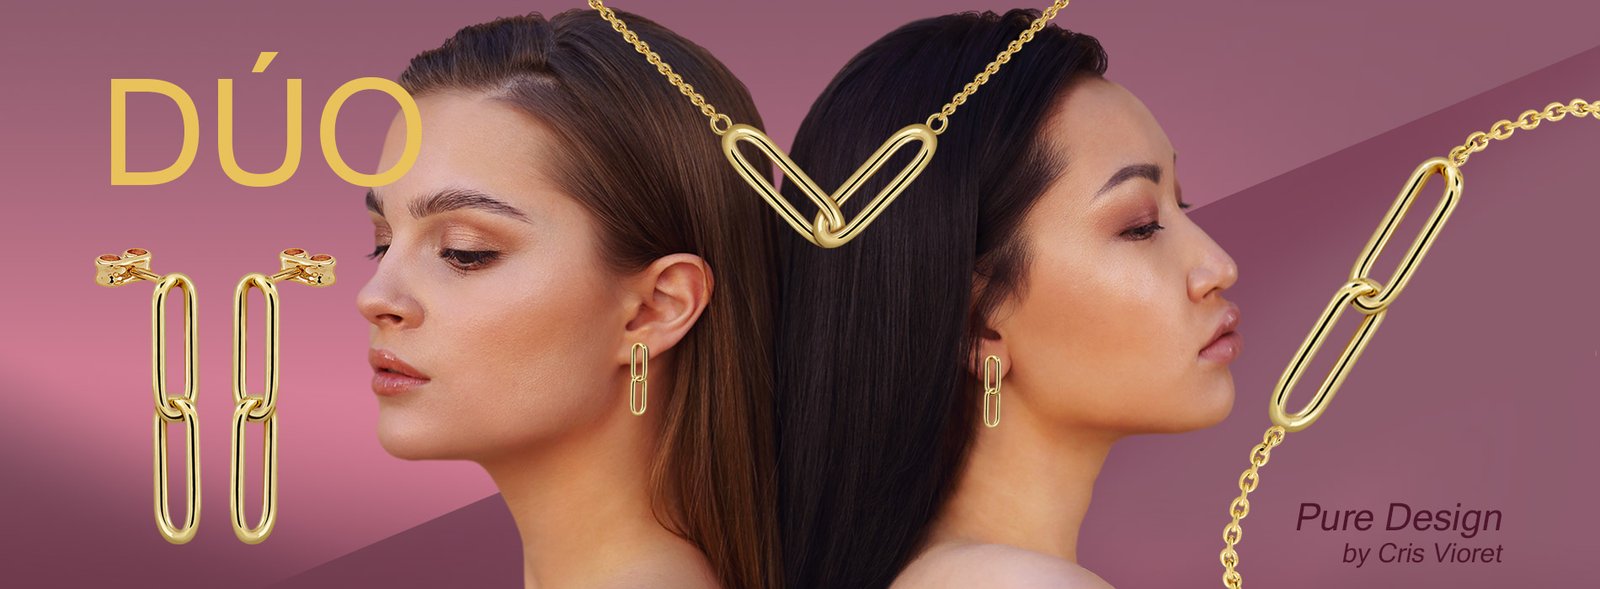 Chicas con joyas acabadas en oro de 18 quilates de la colección dúo, diseñada por Cris Vioret